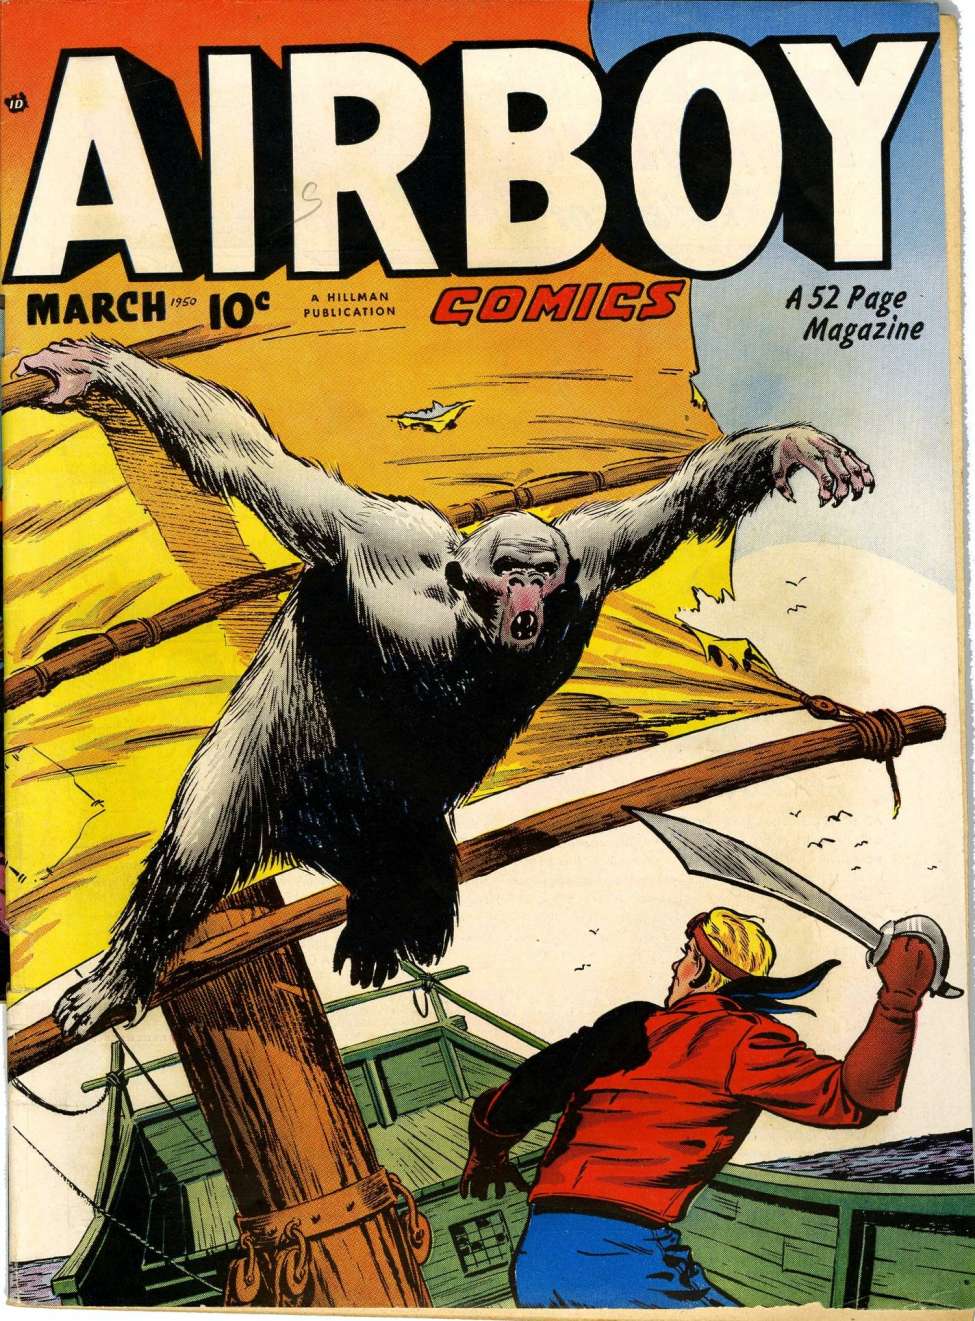 Book Cover For Airboy Comics v7 2 (alt)